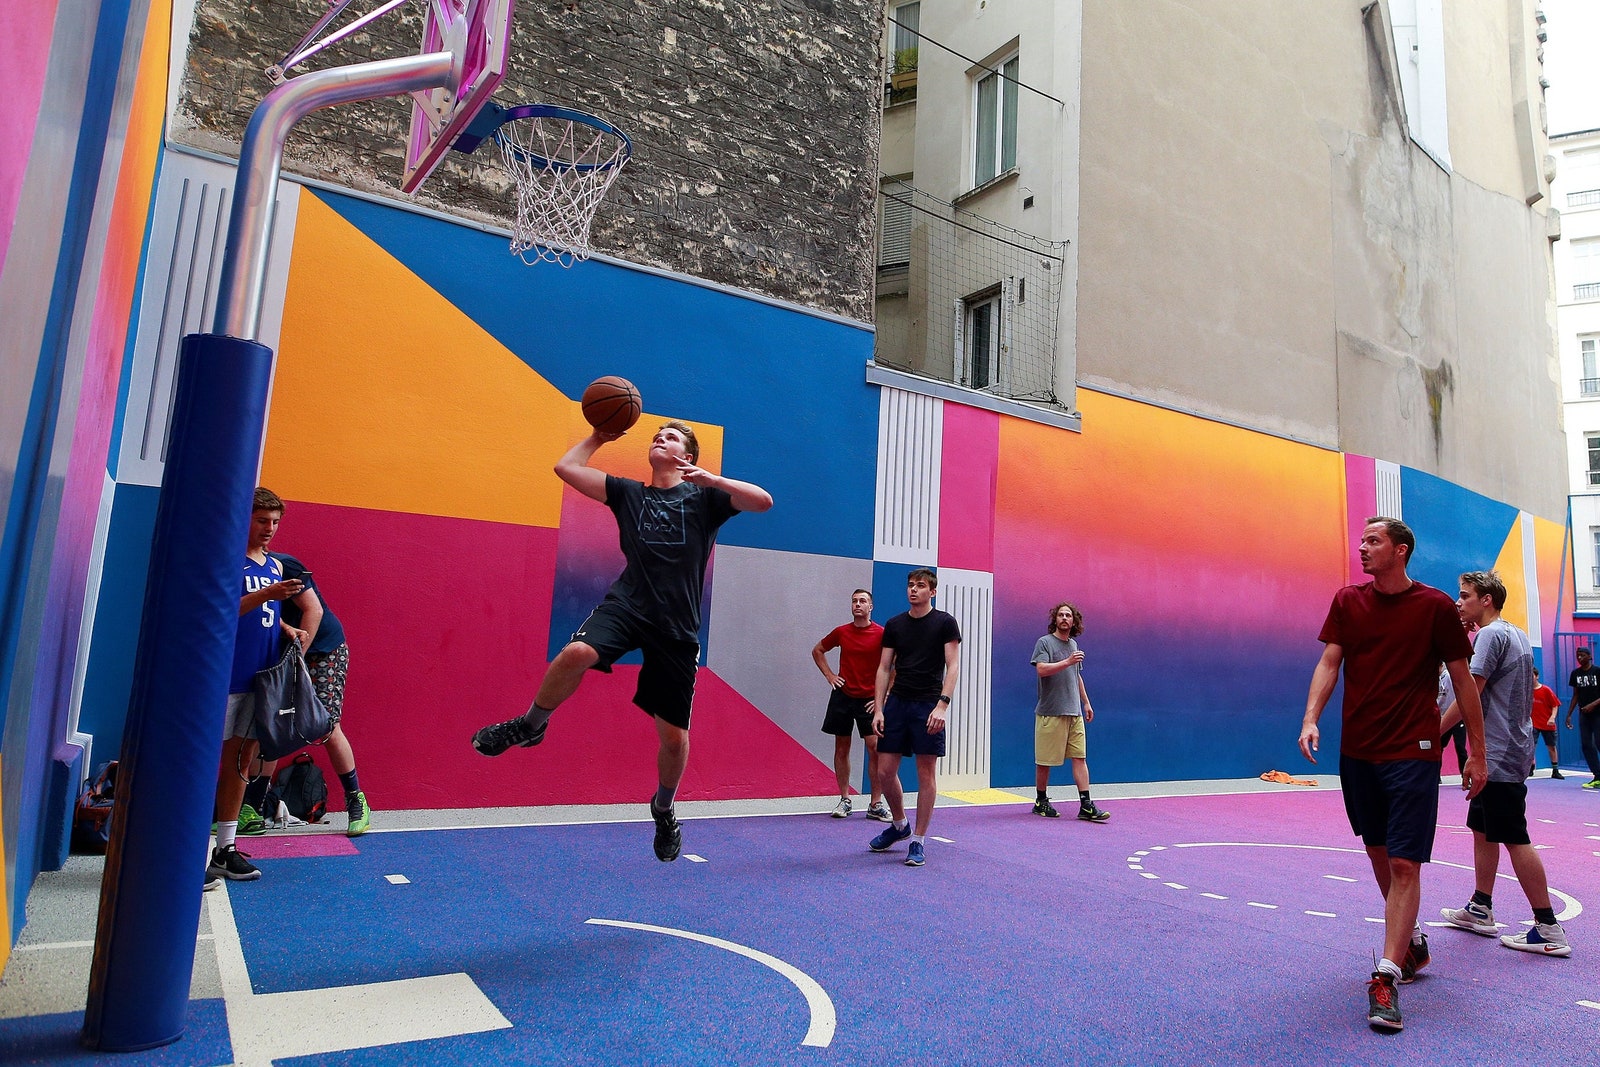 Спорт как искусство 19 баскетбольных площадок с интересным дизайном